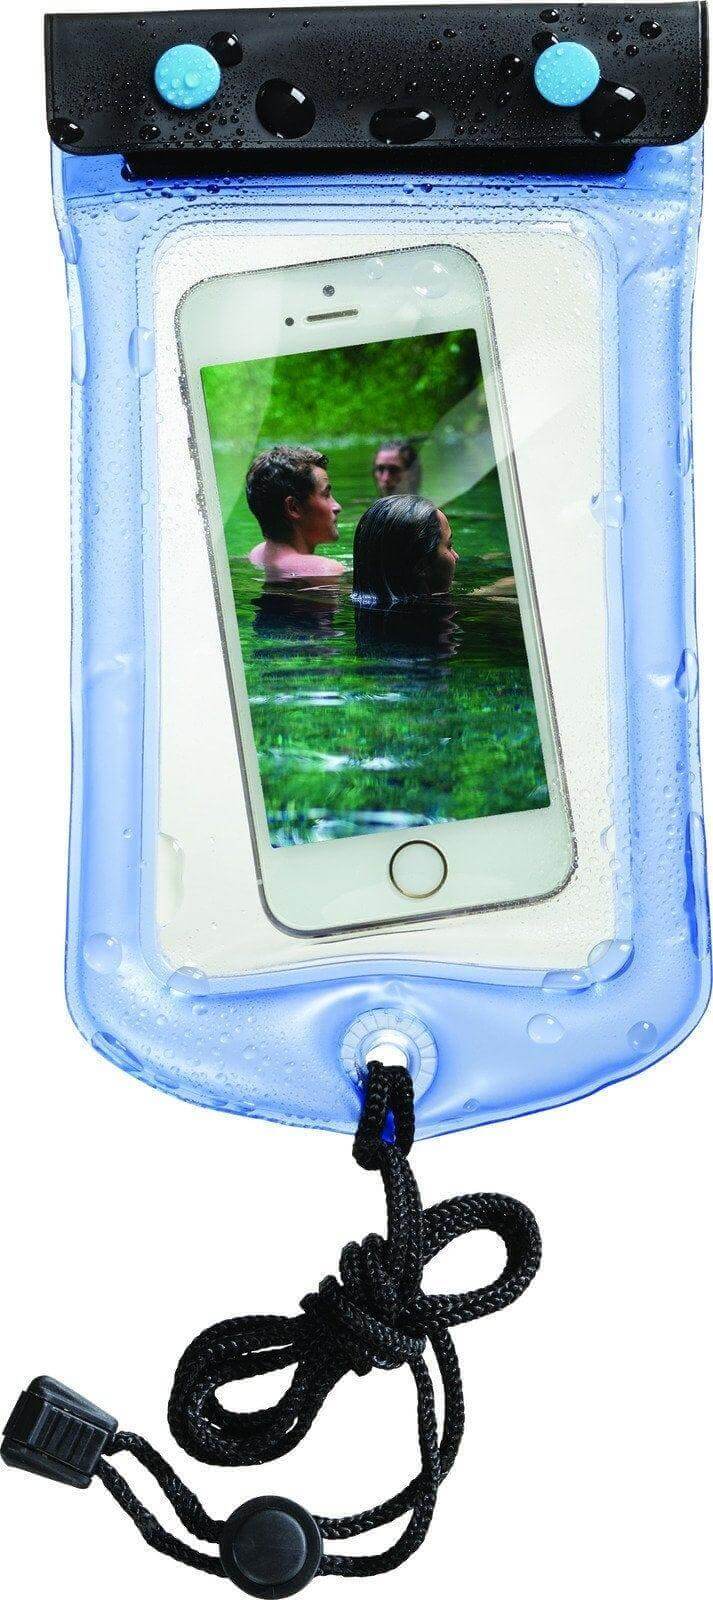 Load image into Gallery viewer, Lewis N Clark Waterseals Waterproof Mobile Phone | Adventureco
